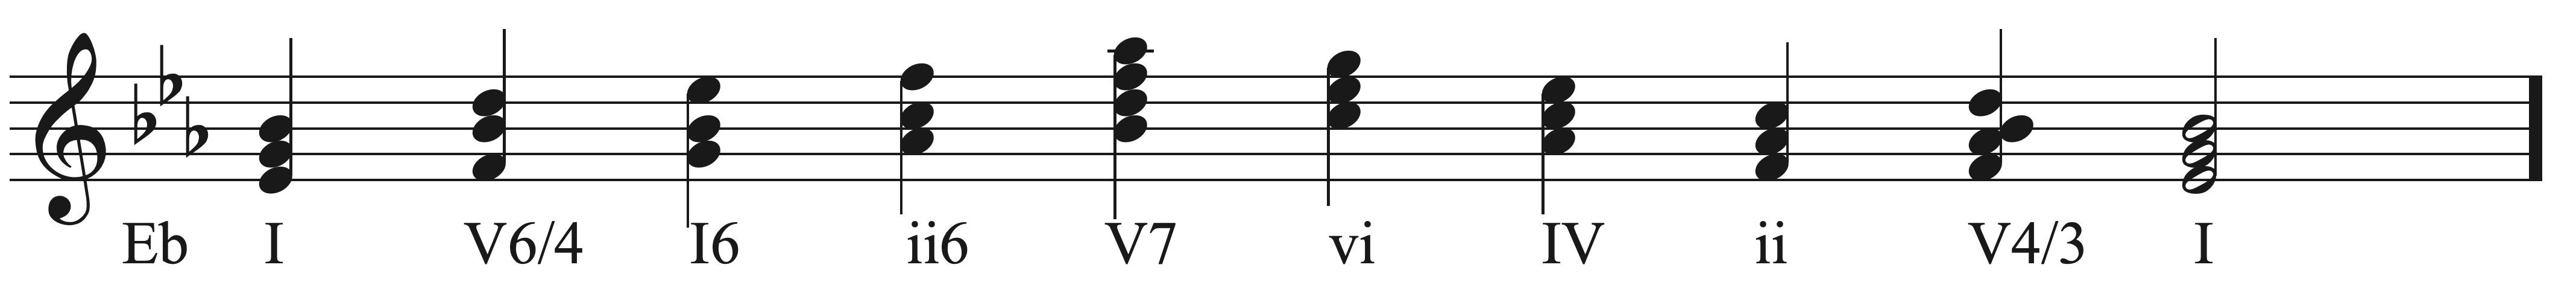 Harmonic Progressions Sight Singing exercise example